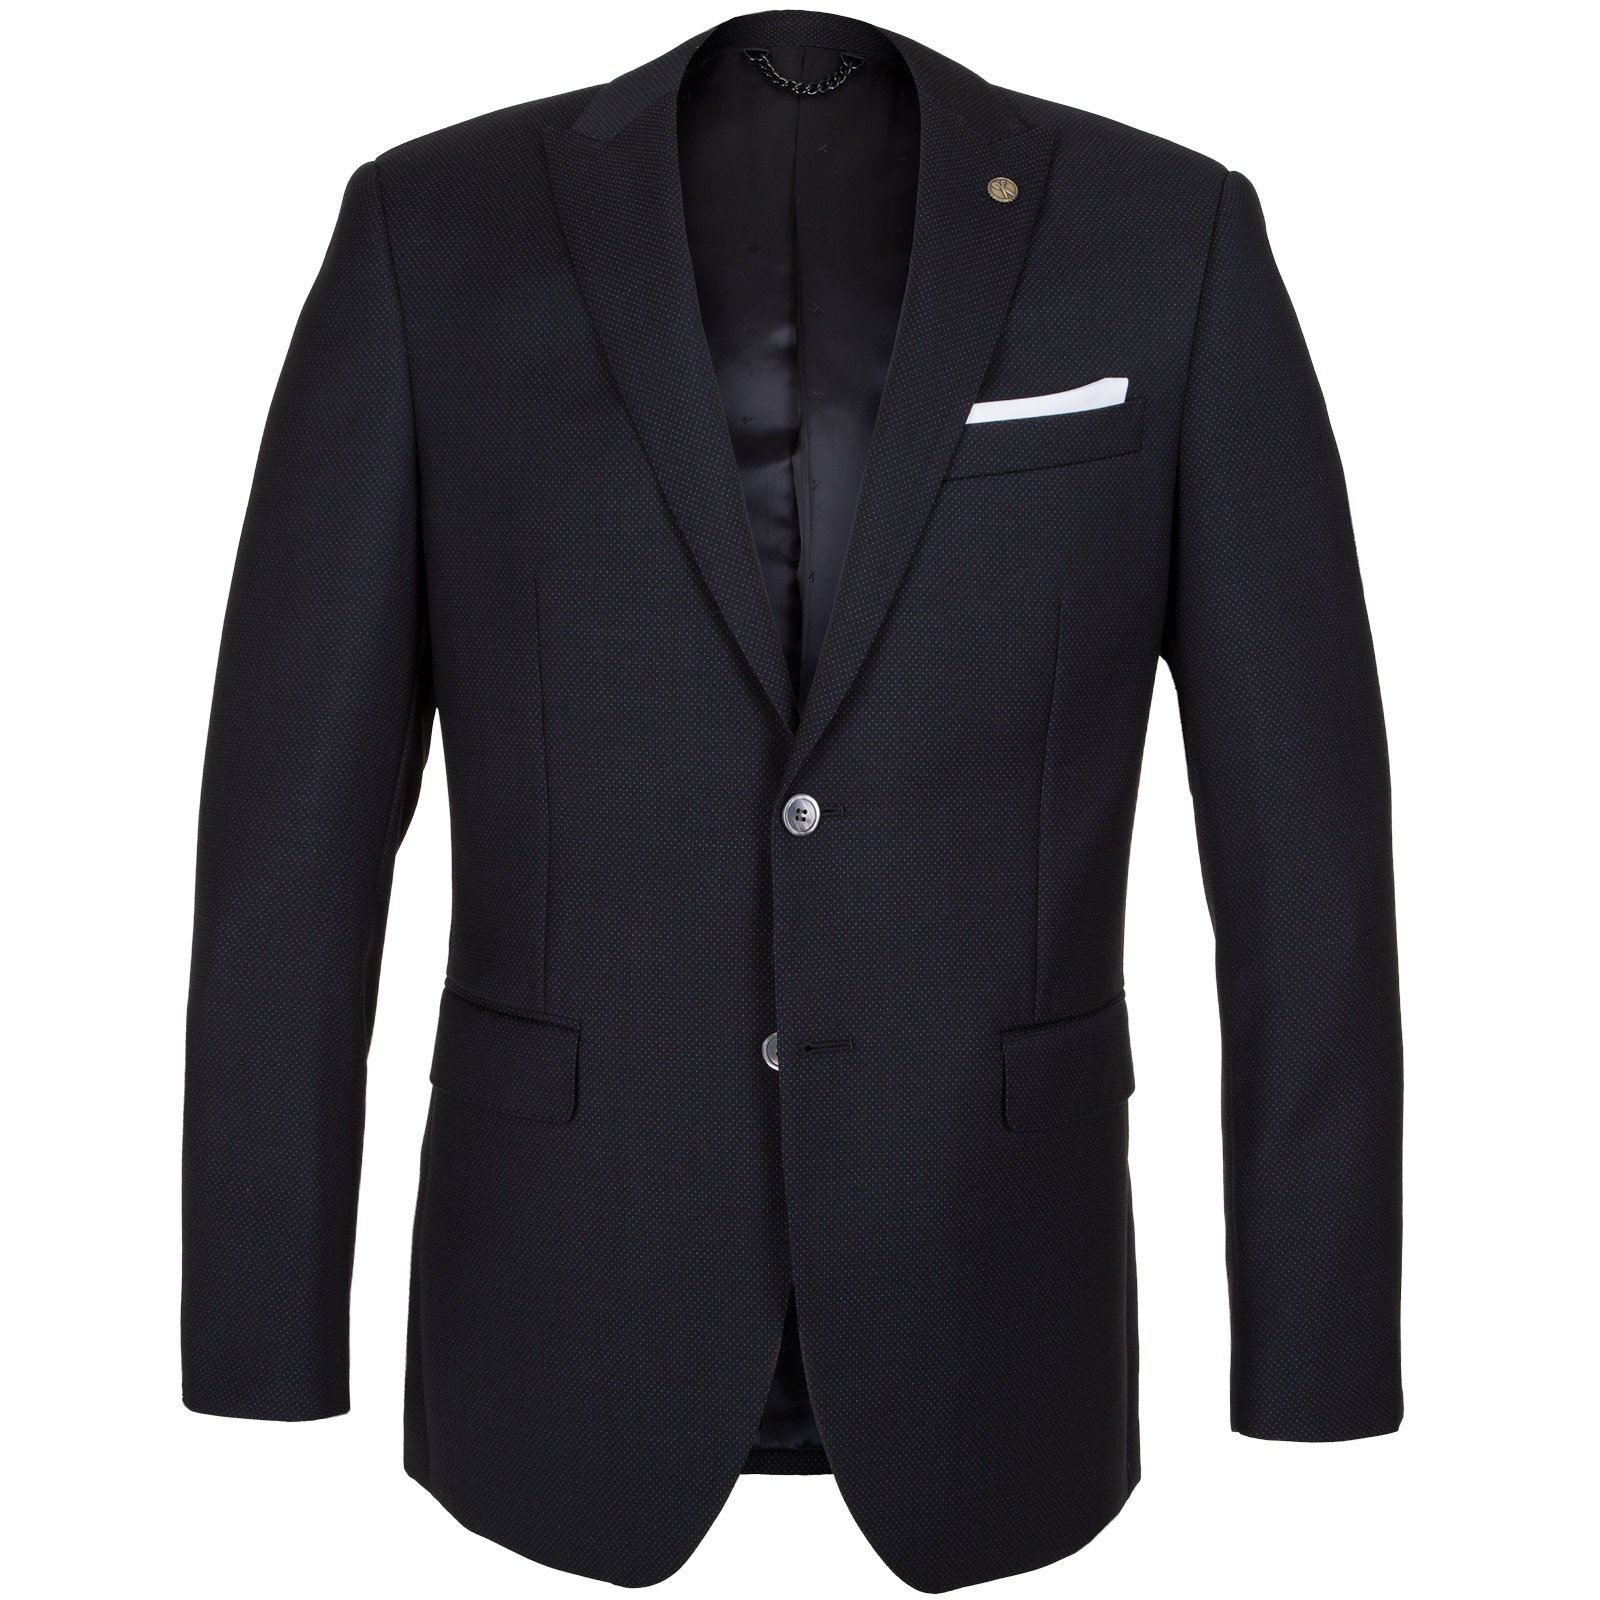 Embassy Pin Dot Wool Suit - On Sale : Fifth Avenue Menswear - JOE BLACK ...